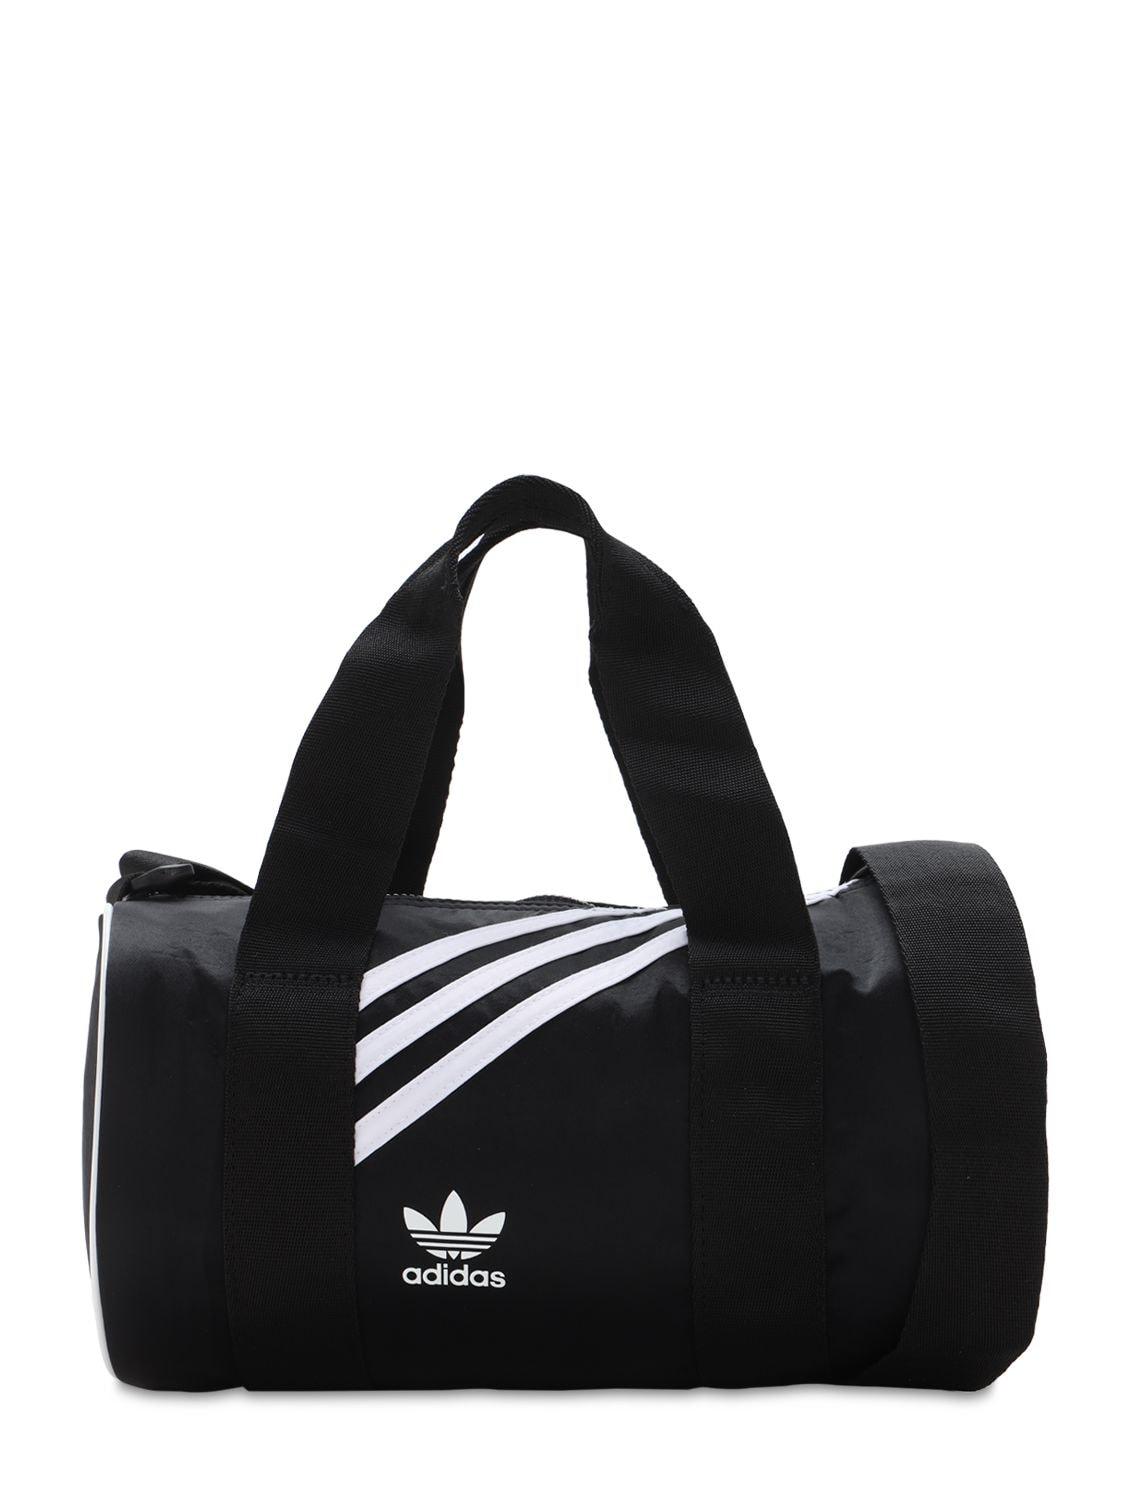 adidas Originals Mini Nylon Duffle Bag in Black | Lyst